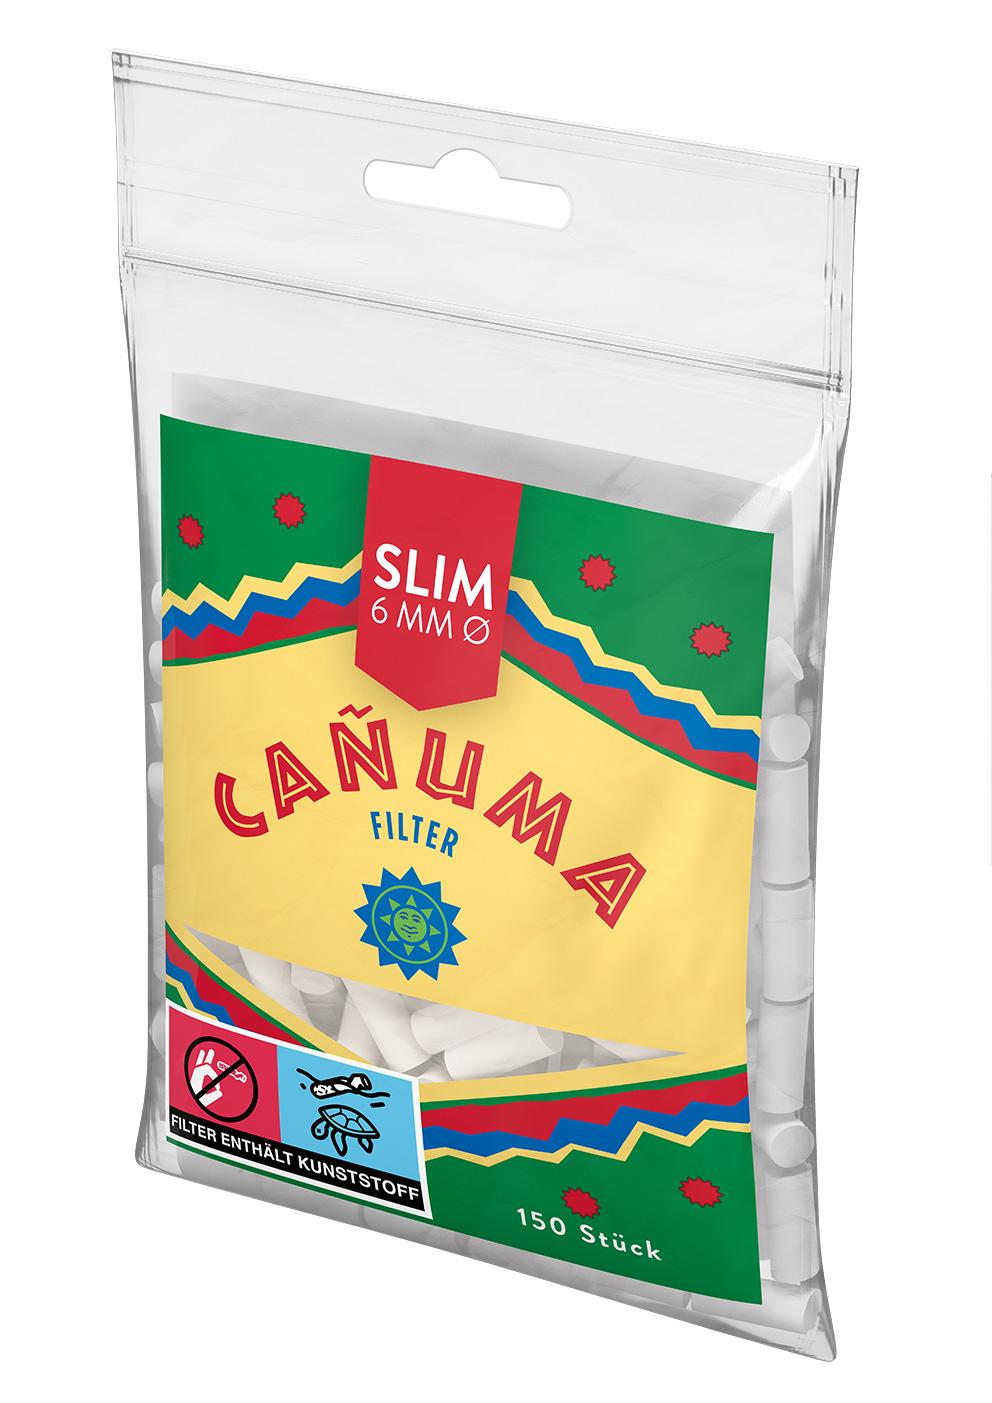 Canuma Filter Tips 6mm 1 Stange